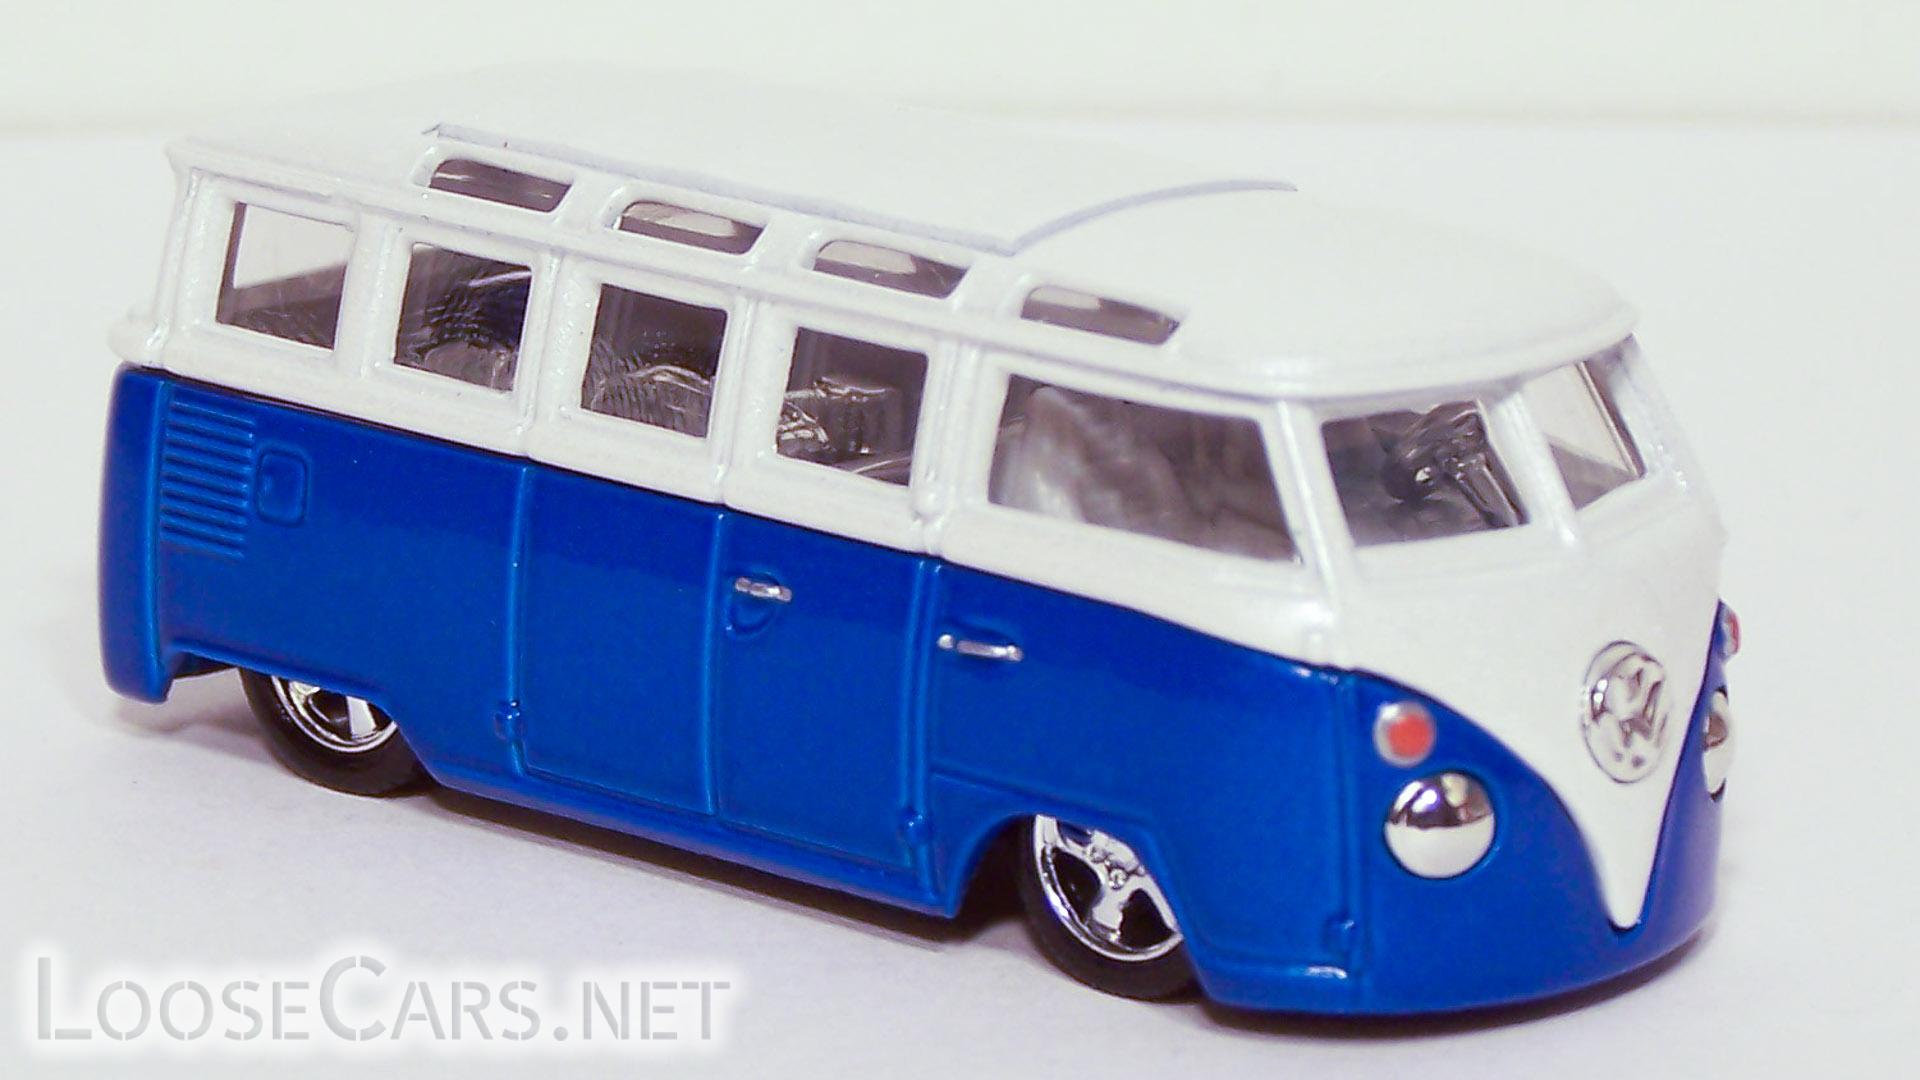 '01 100% Hot Wheels Bugs N Buses VW Volkswagen Microbus Bus Blue/White